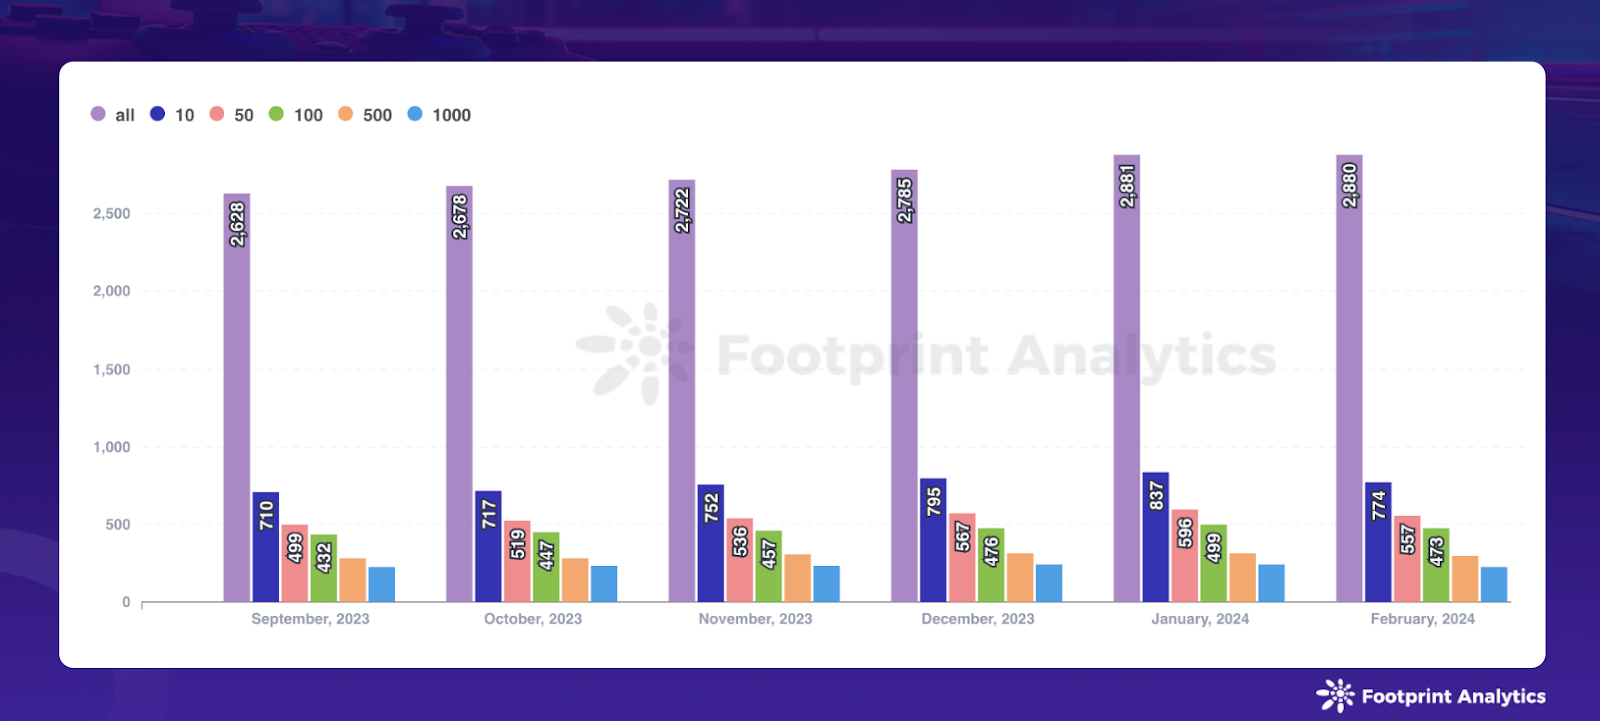 数据来源：每月活跃区块链游戏数 - Footprint Analytics